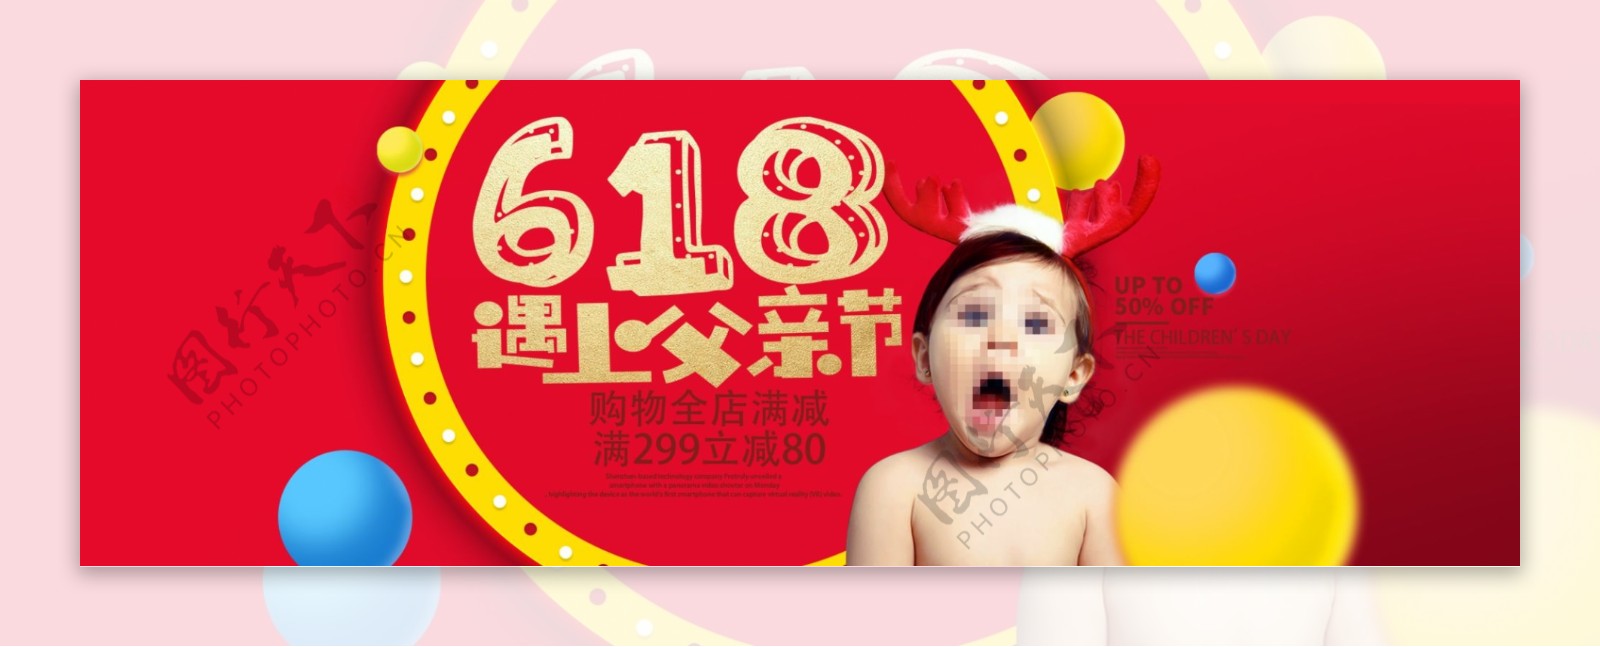 618遇上父亲节活动大促海报全屏母婴海报